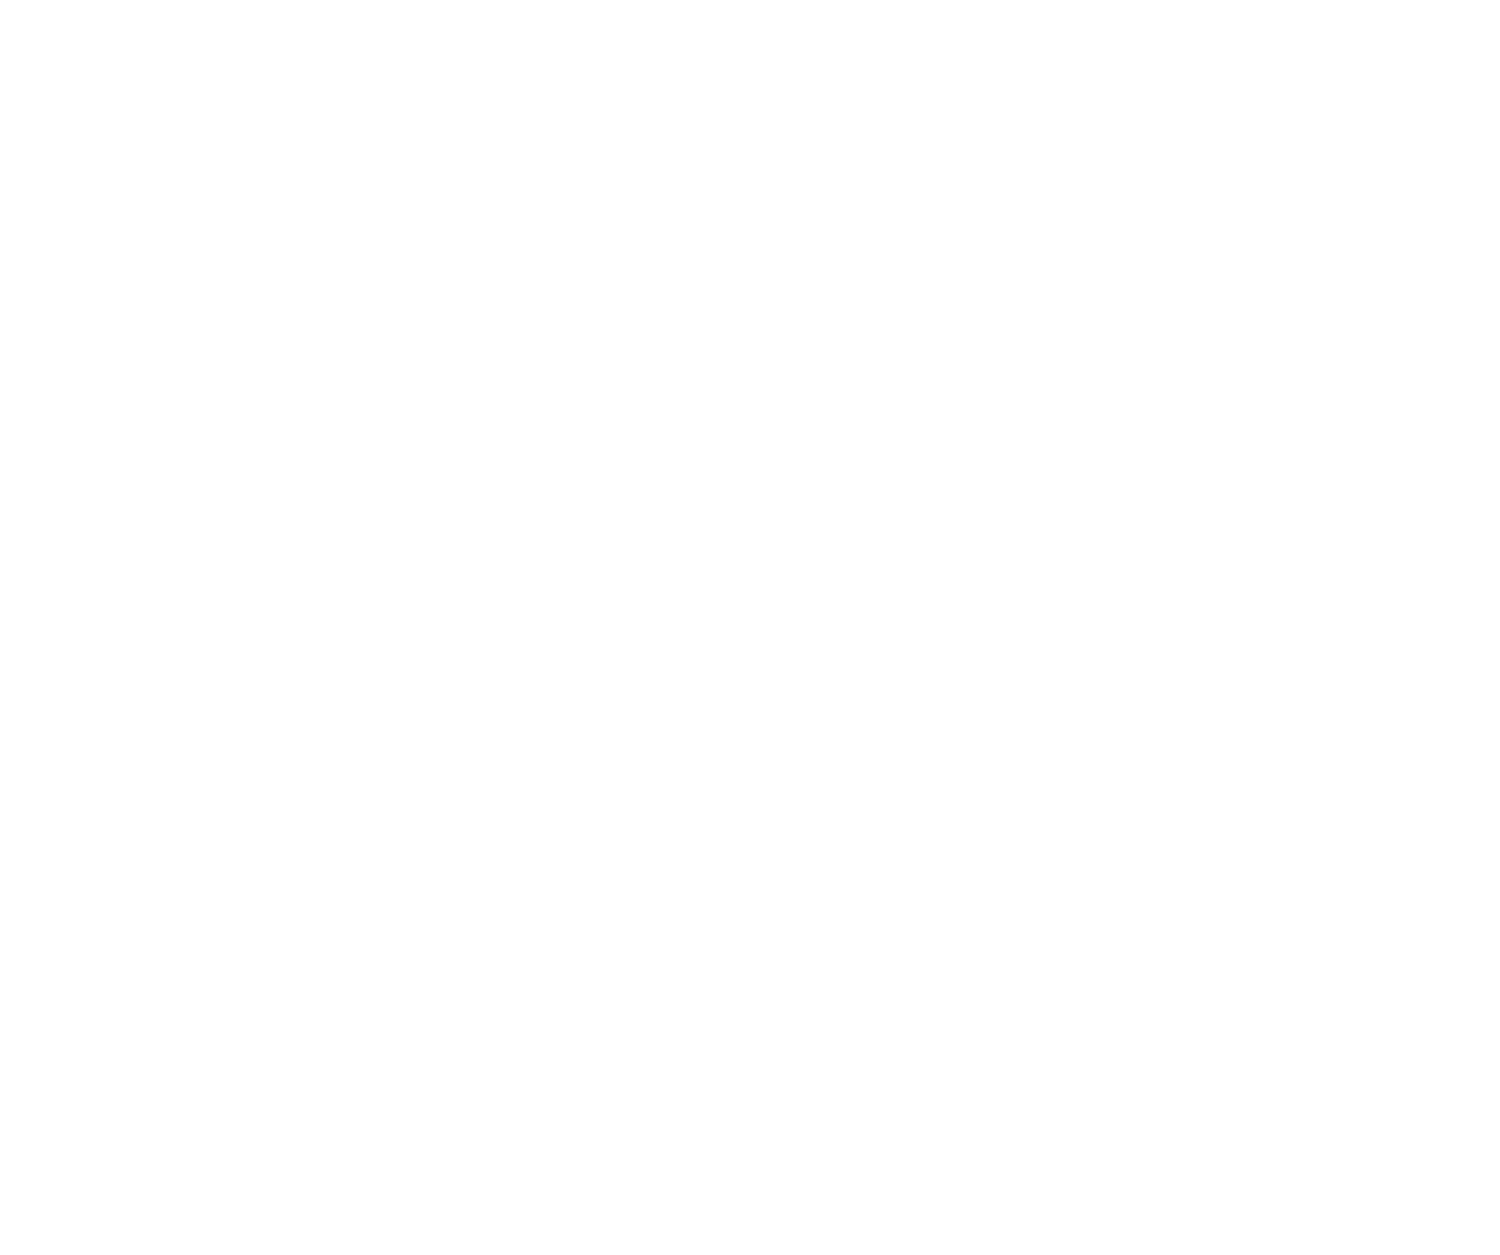 American Dream Center